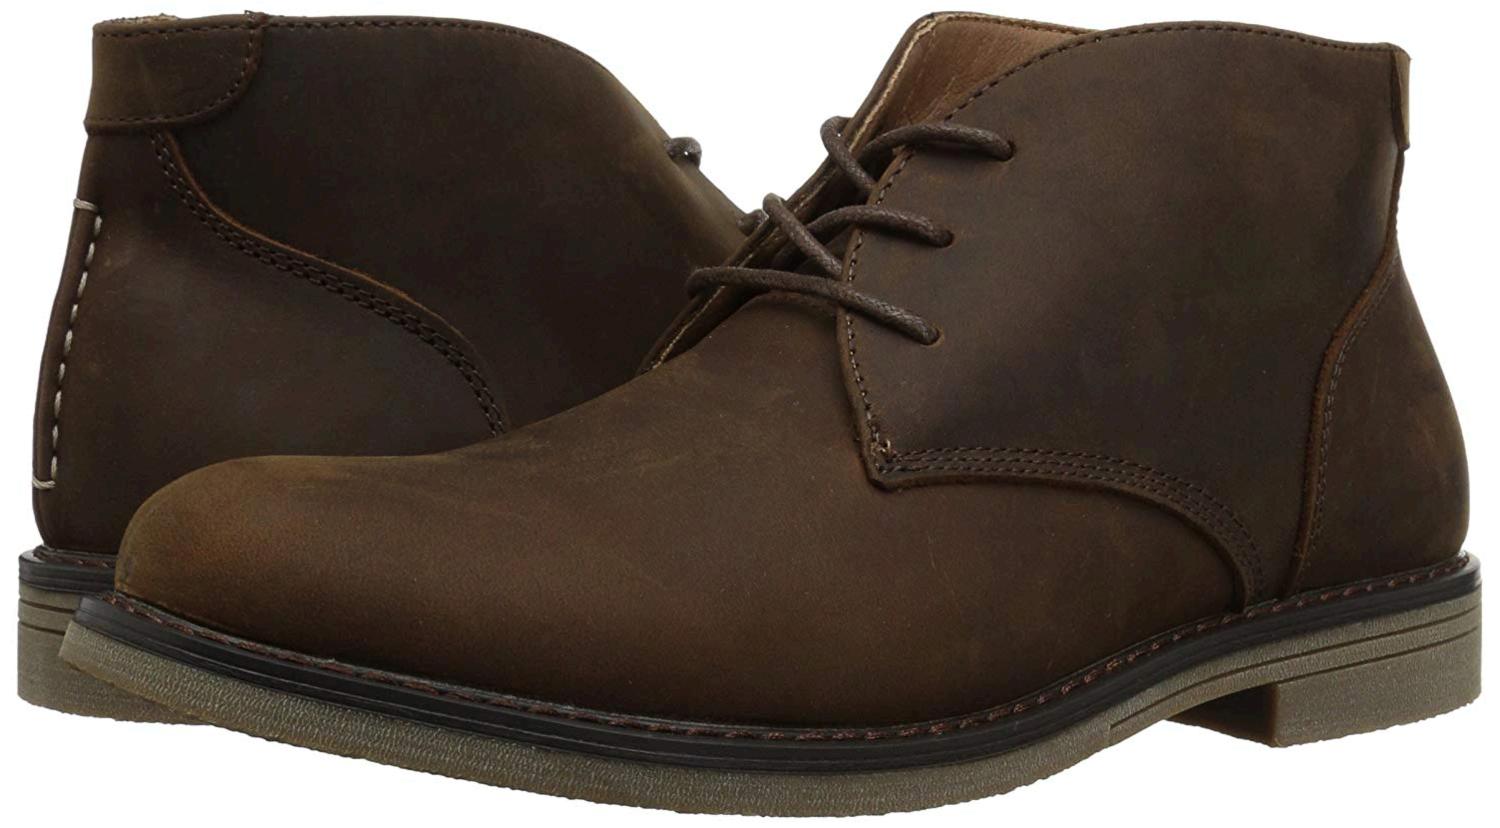 Nunn Bush Men's Lancaster Plain Toe Chukka Boot, Brown, Size 11.5 e9M7 ...